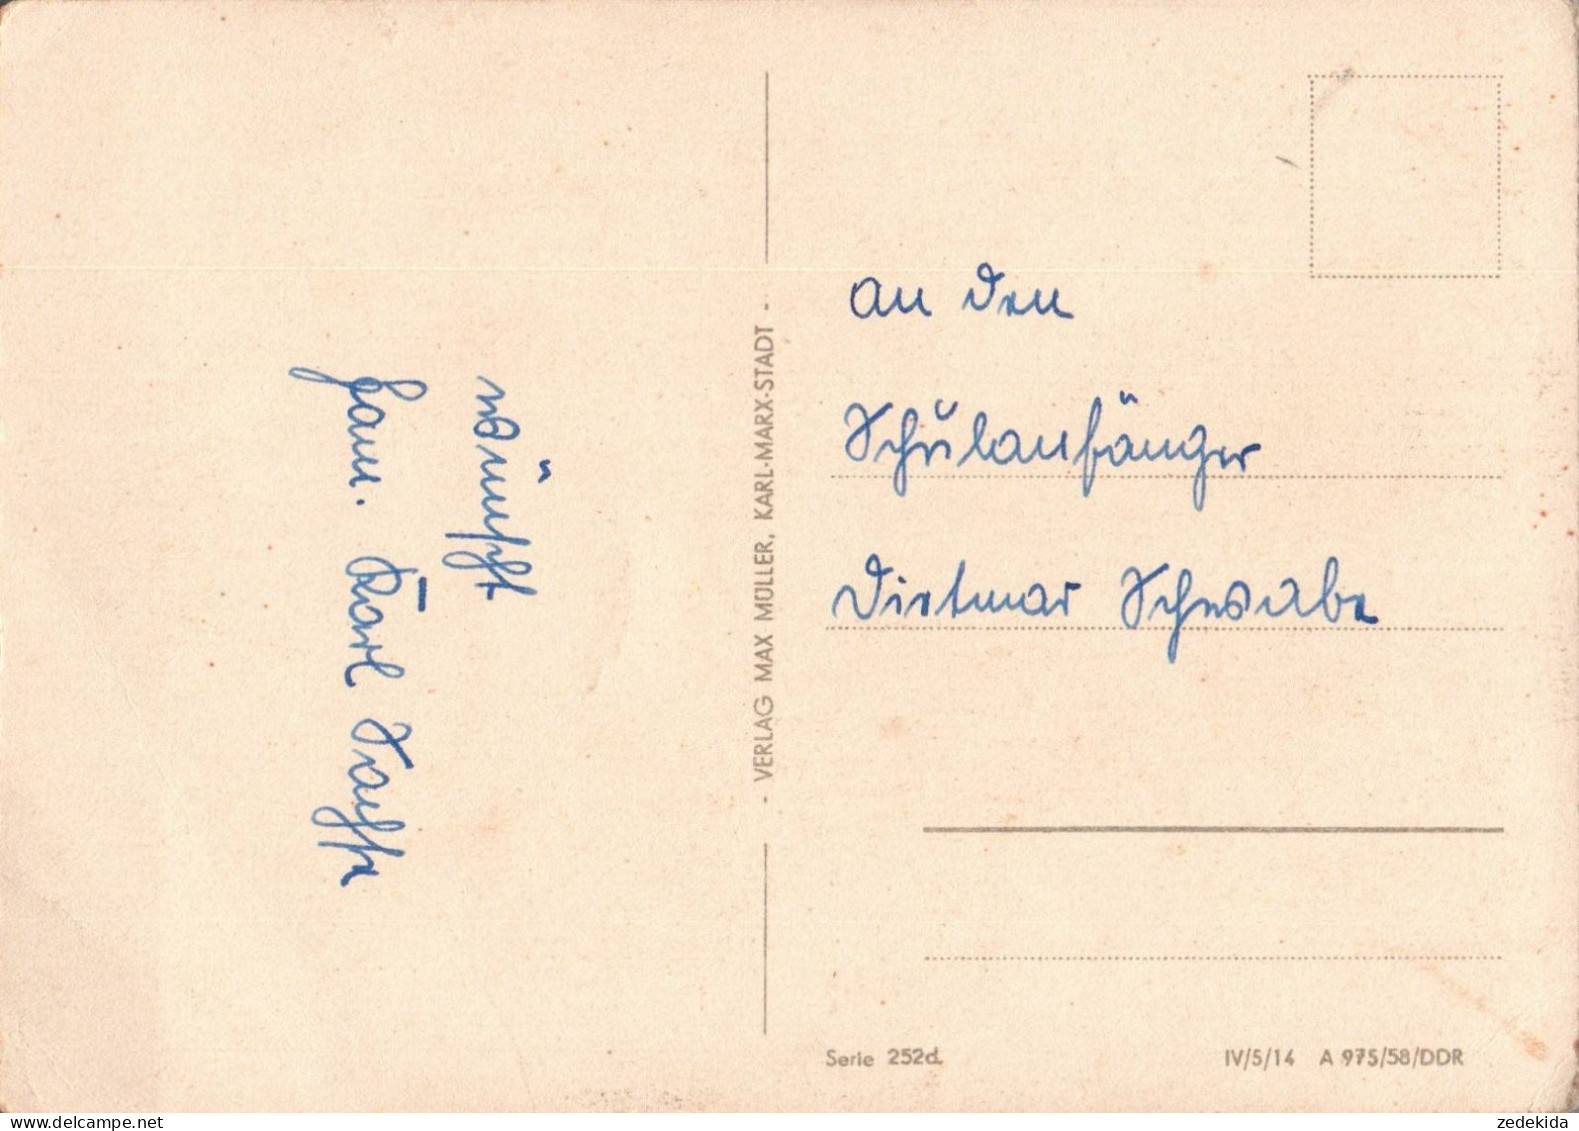 H1816 - Holscher Christine Glückwunschkarte Schulanfang - Verlag Max Müller DDR - Children's School Start